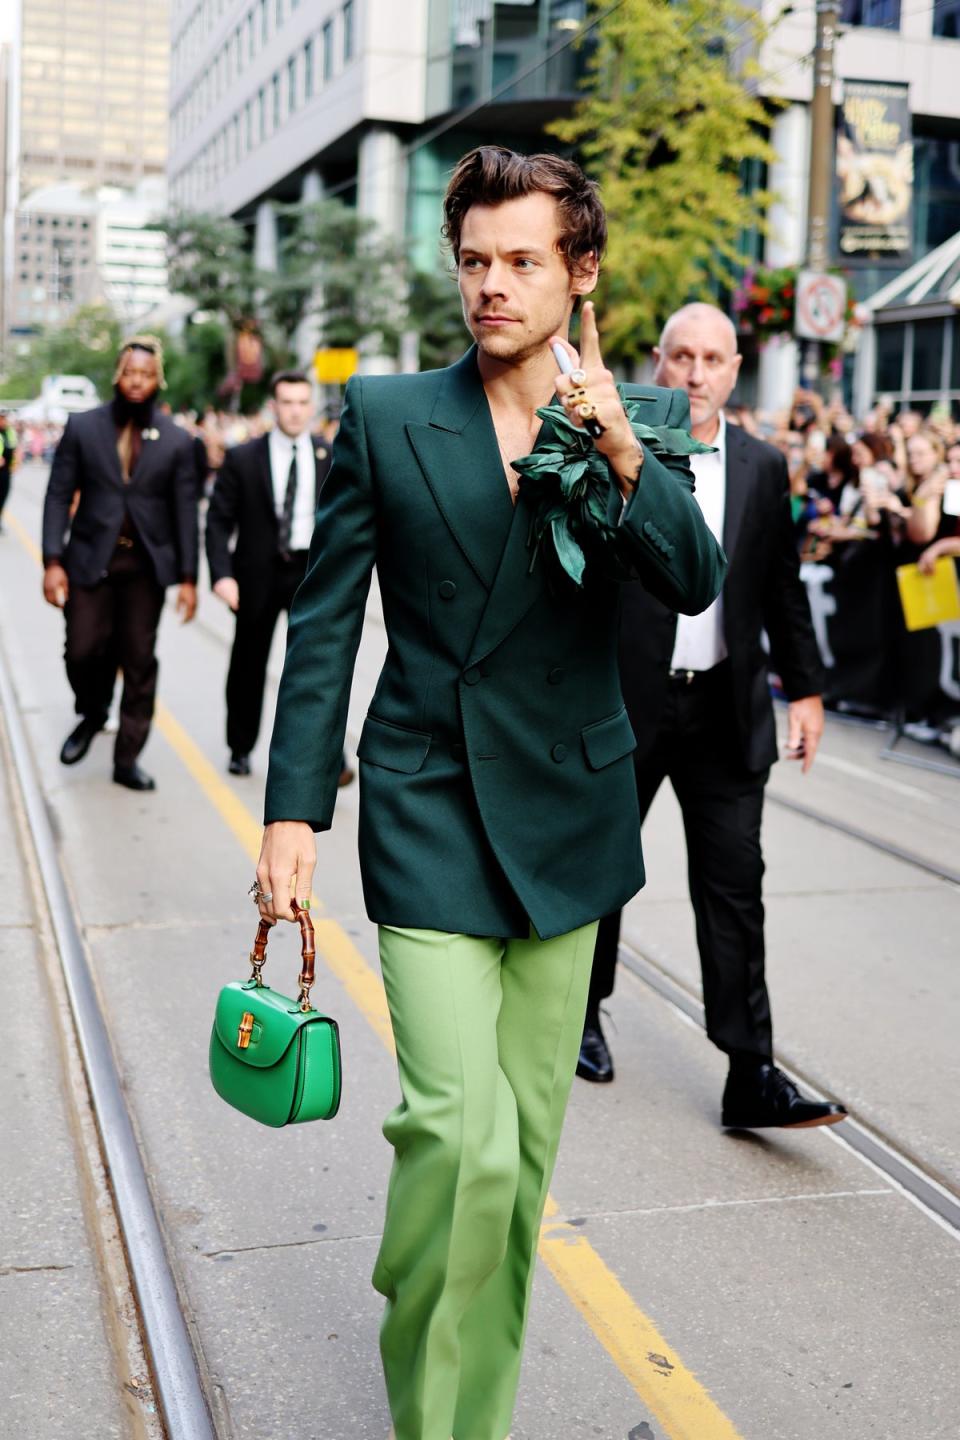 Harry Styles wears Gucci, styled by Harry Lambert (Matt Winkelmeyer/Getty Images)